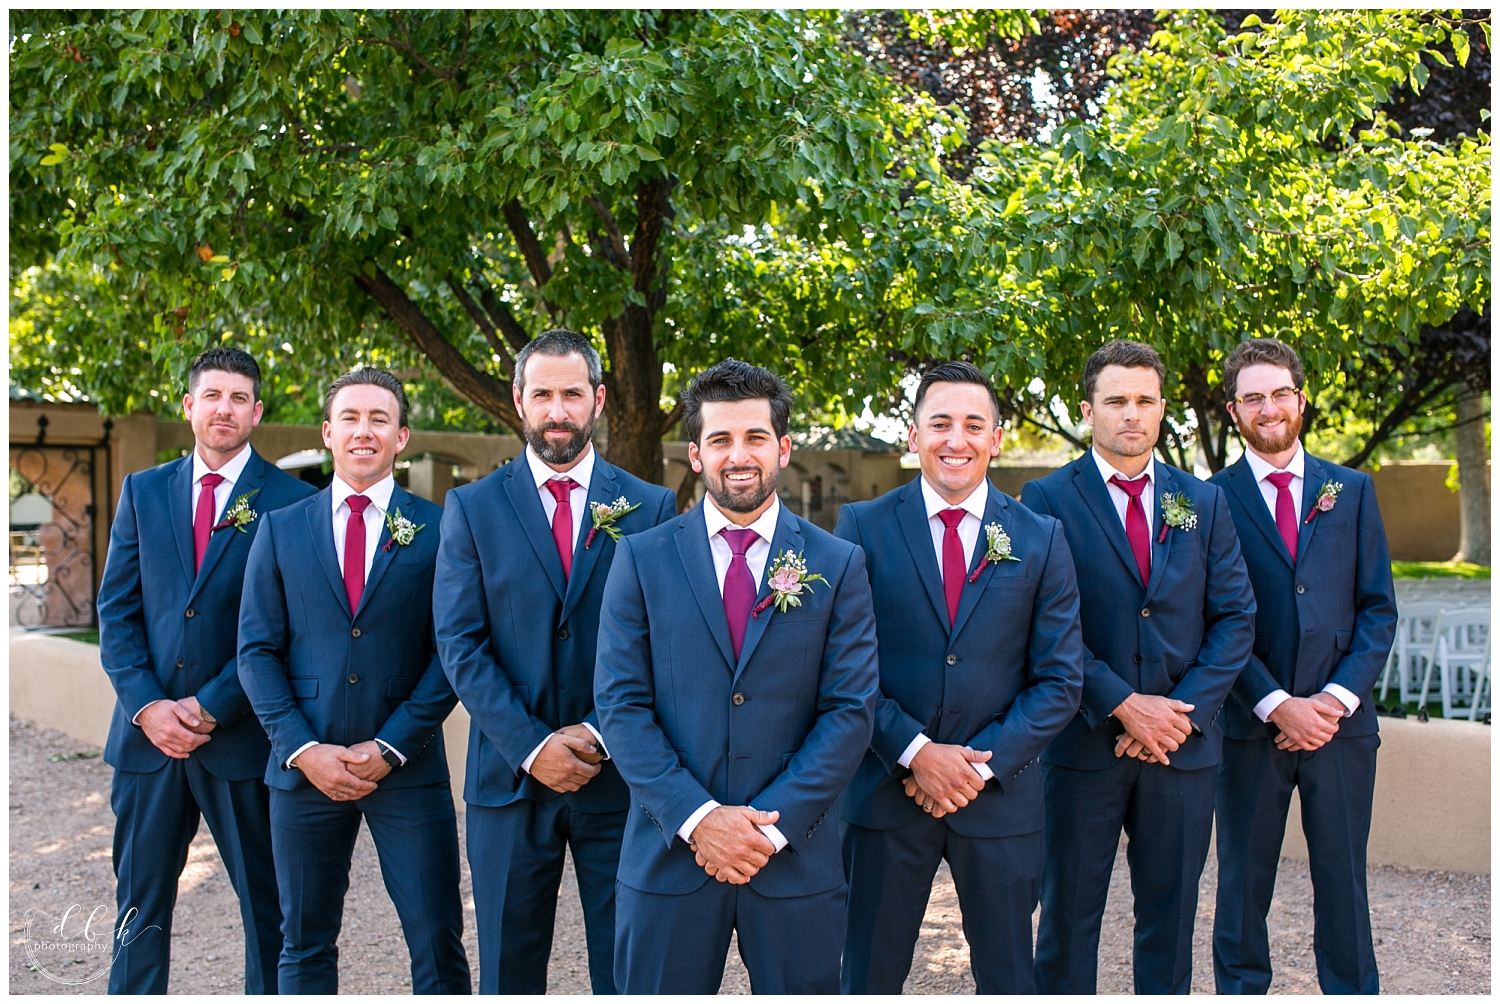 groomsmen in blue suits and maroon ties